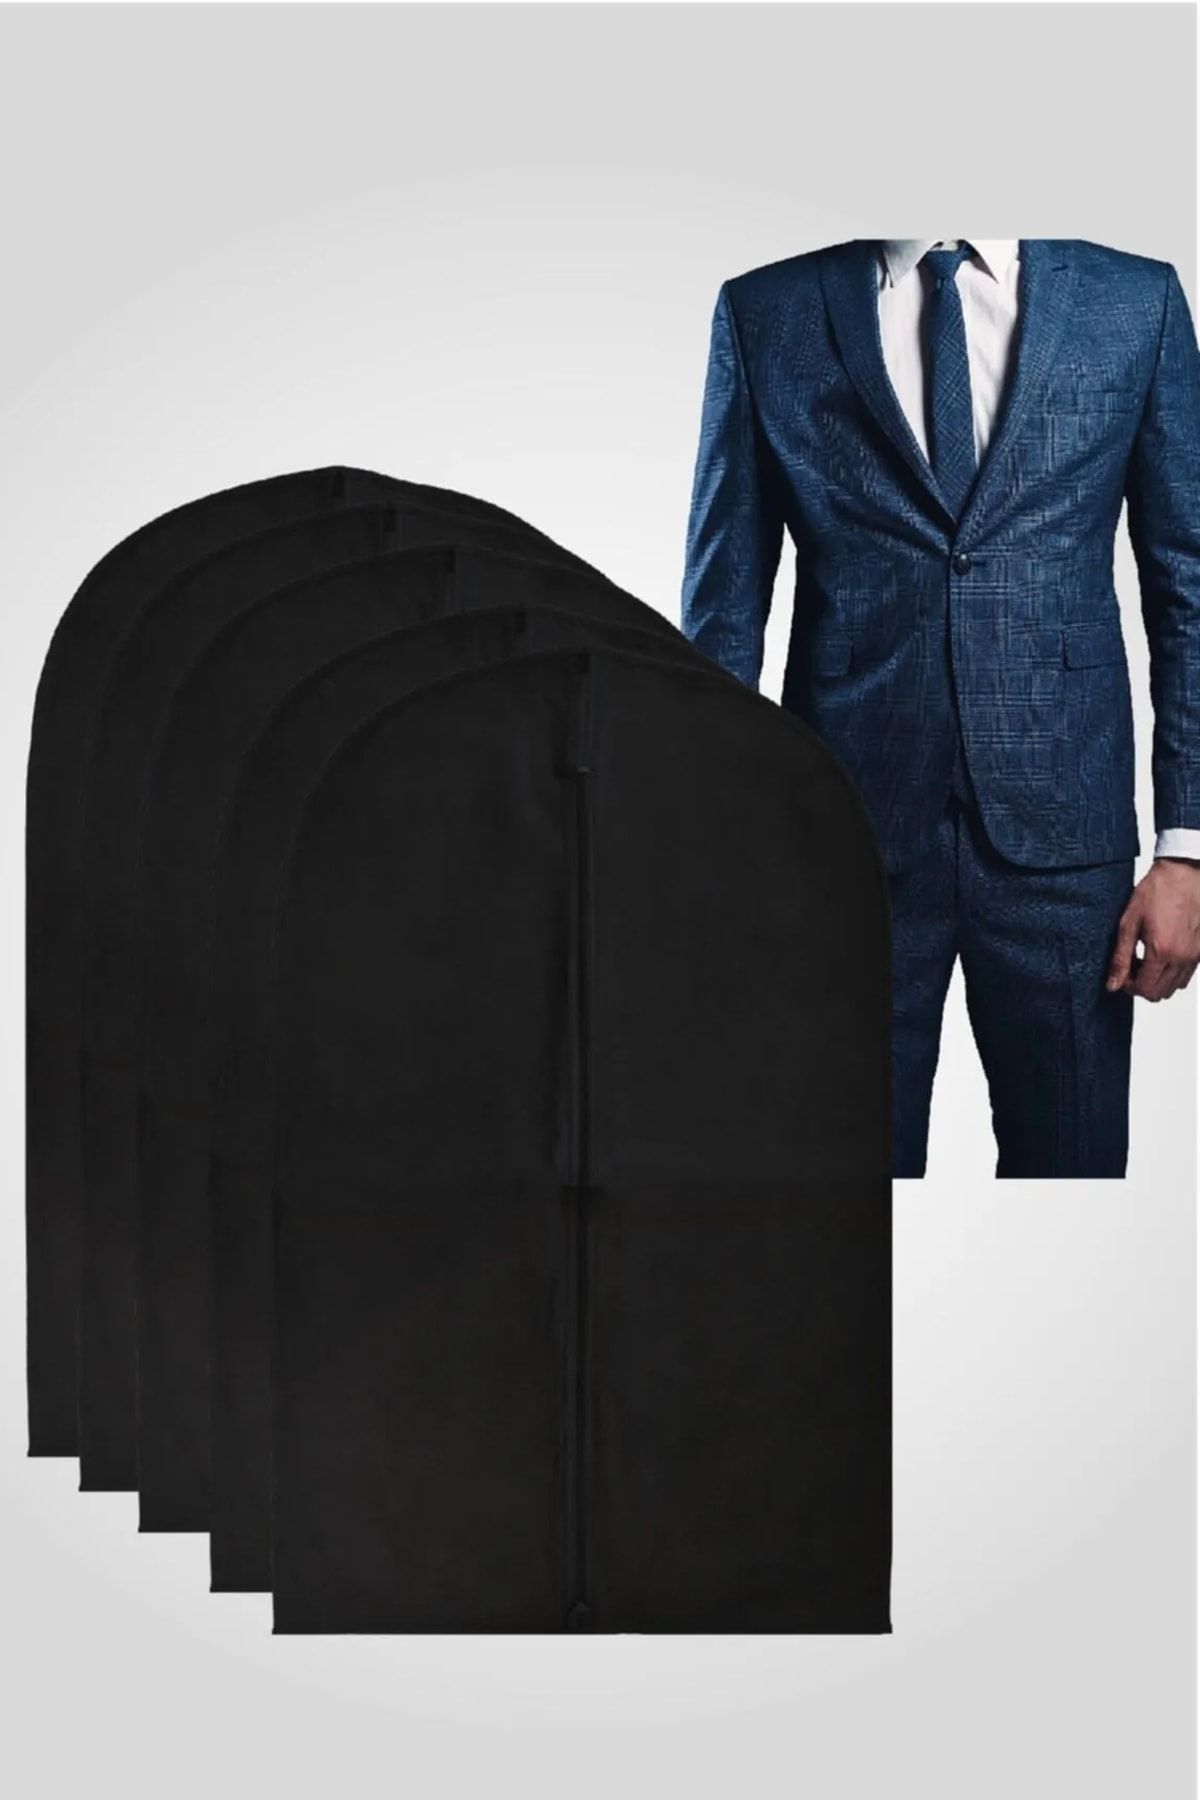 Vivyan 10 Adet Takım Elbise Kılıfı Koruyucu Kılıf 100x63 cm